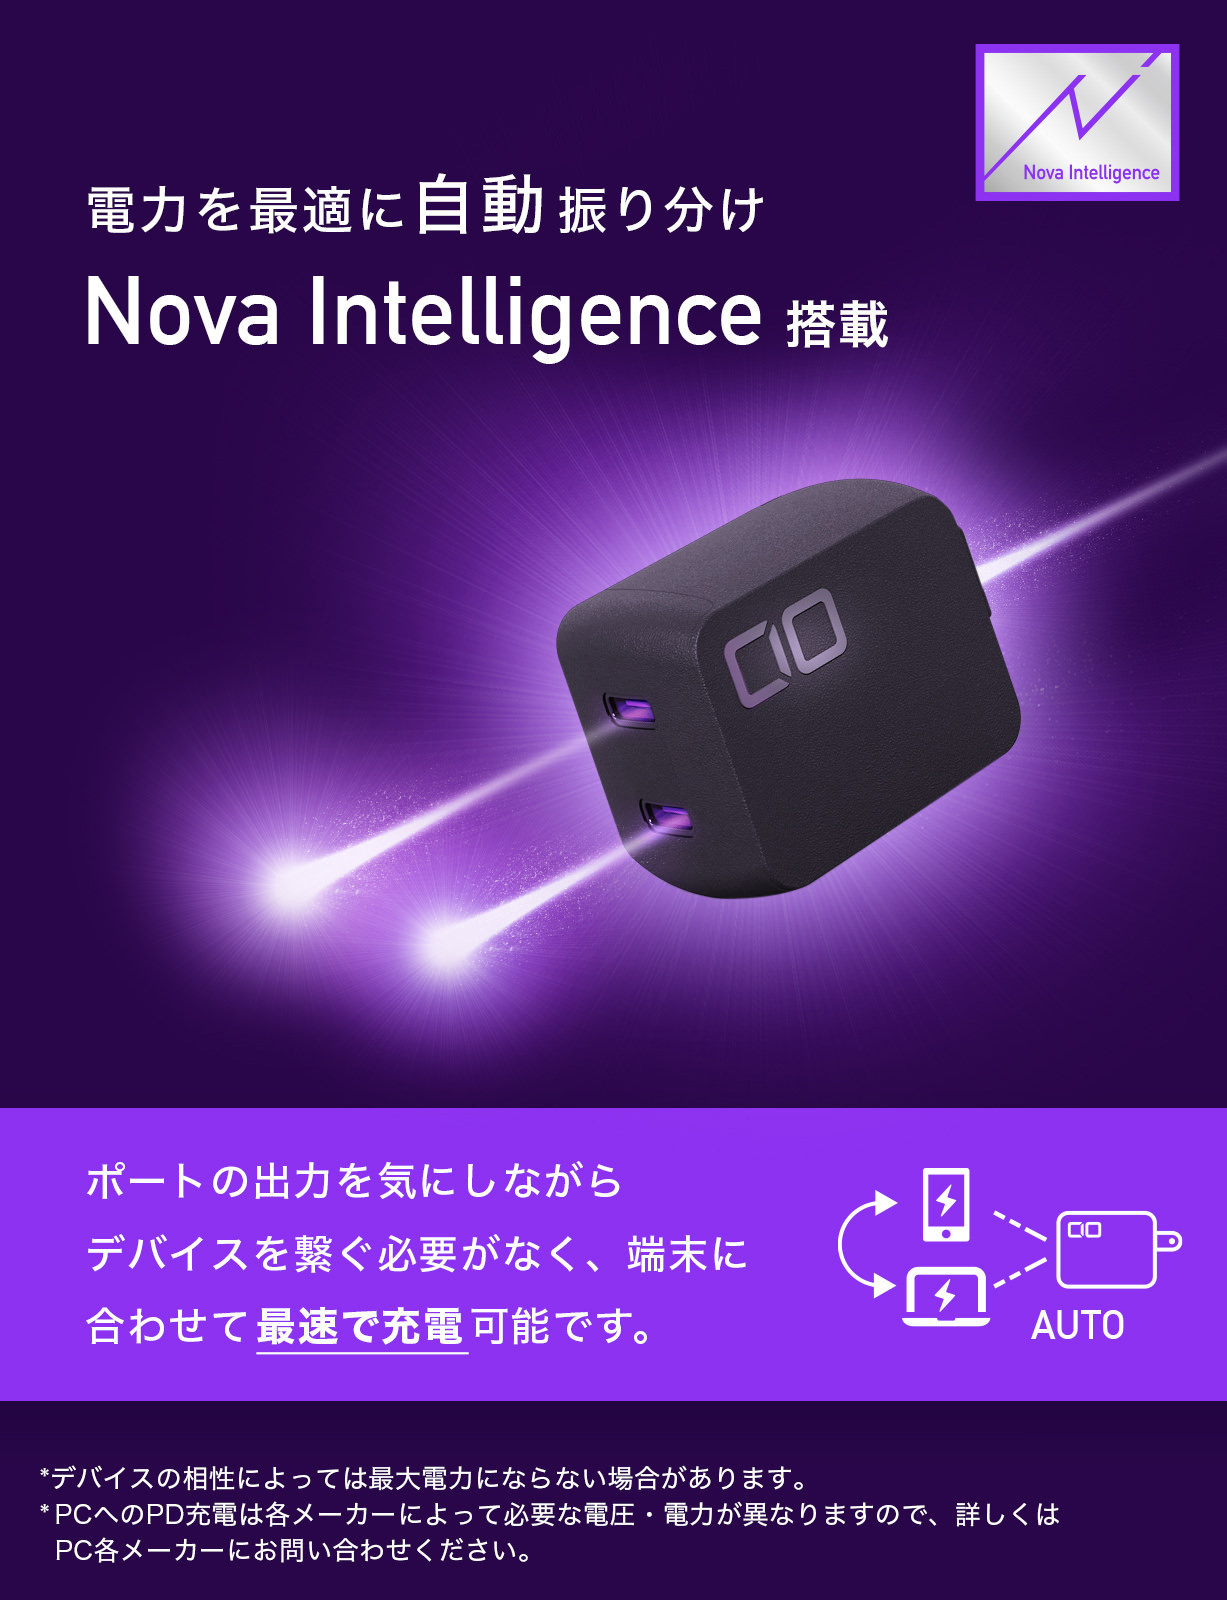 電力自動振り分け機能"Nova Intelligence"を新たに追加